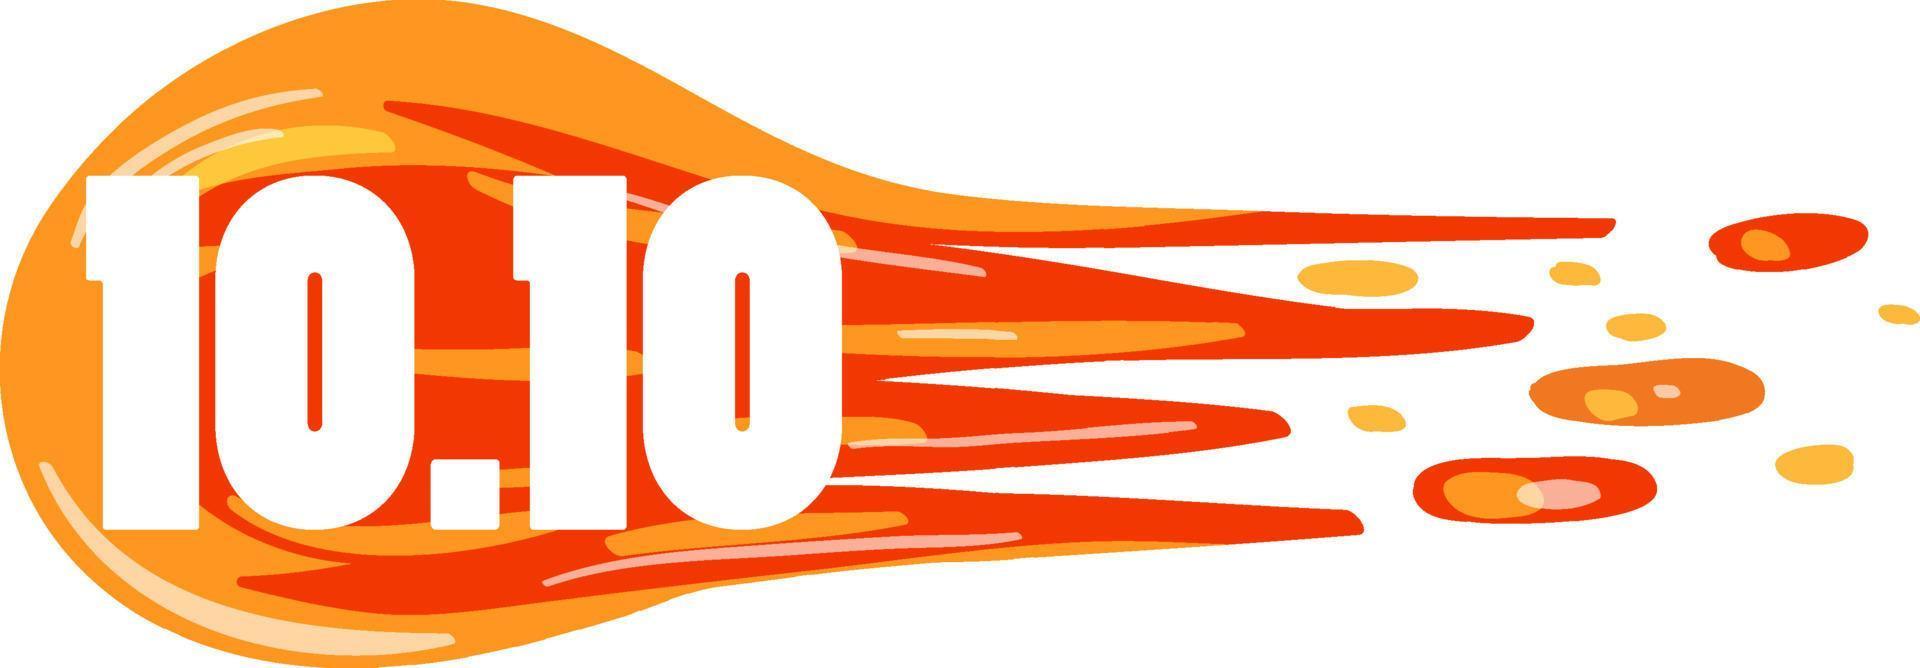 10.10 logotipo da fonte para publicidade vetor